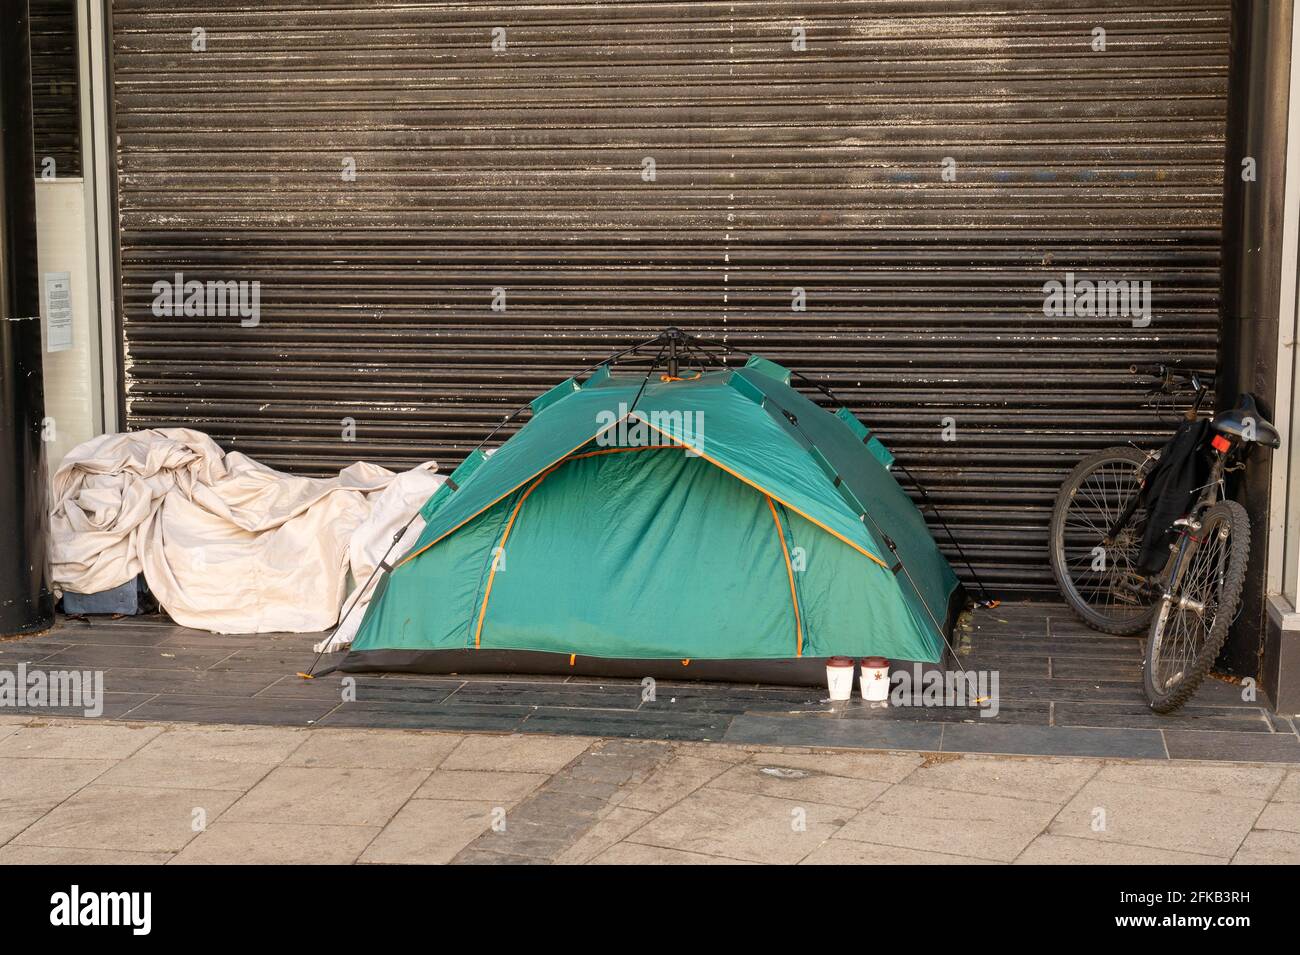 Norwich centro città chiuso porta del negozio Rough Sleeps tenda ed effetti personali Foto Stock